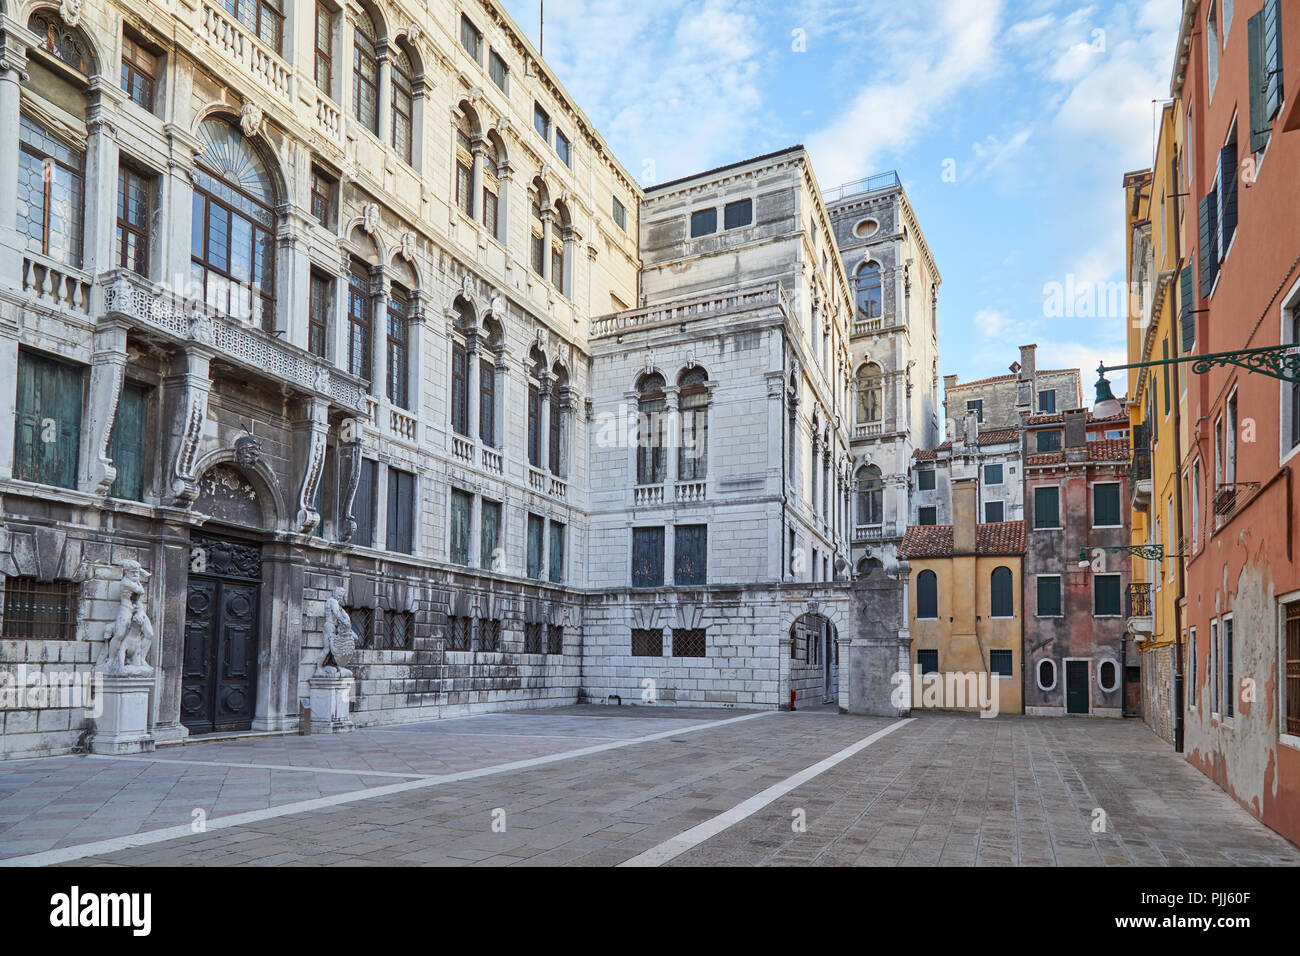 Venecia, plaza vacía o campo con edificios antiguos en un día soleado de verano en Italia Foto de stock